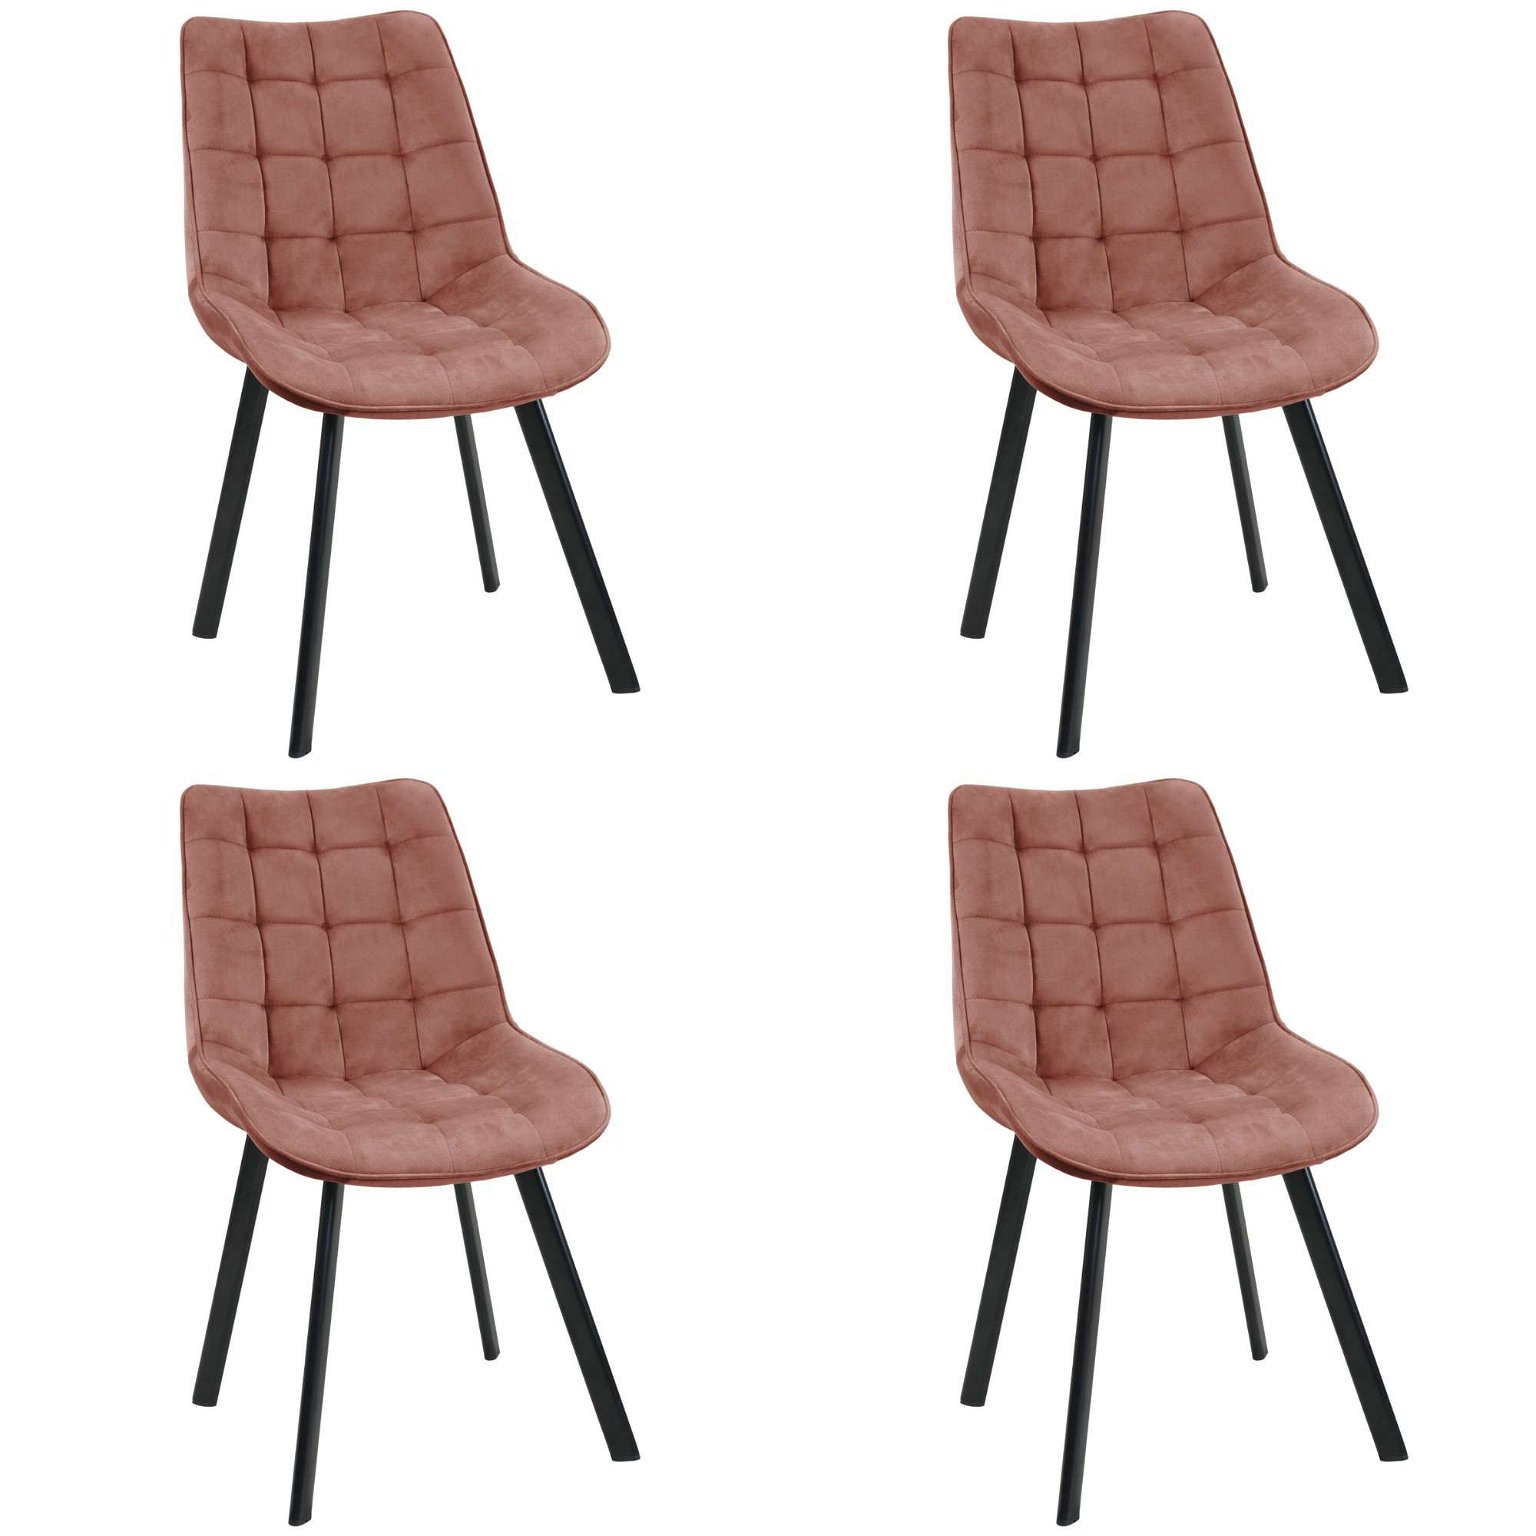 4-ių kėdžių komplektas SJ.22, rožinė